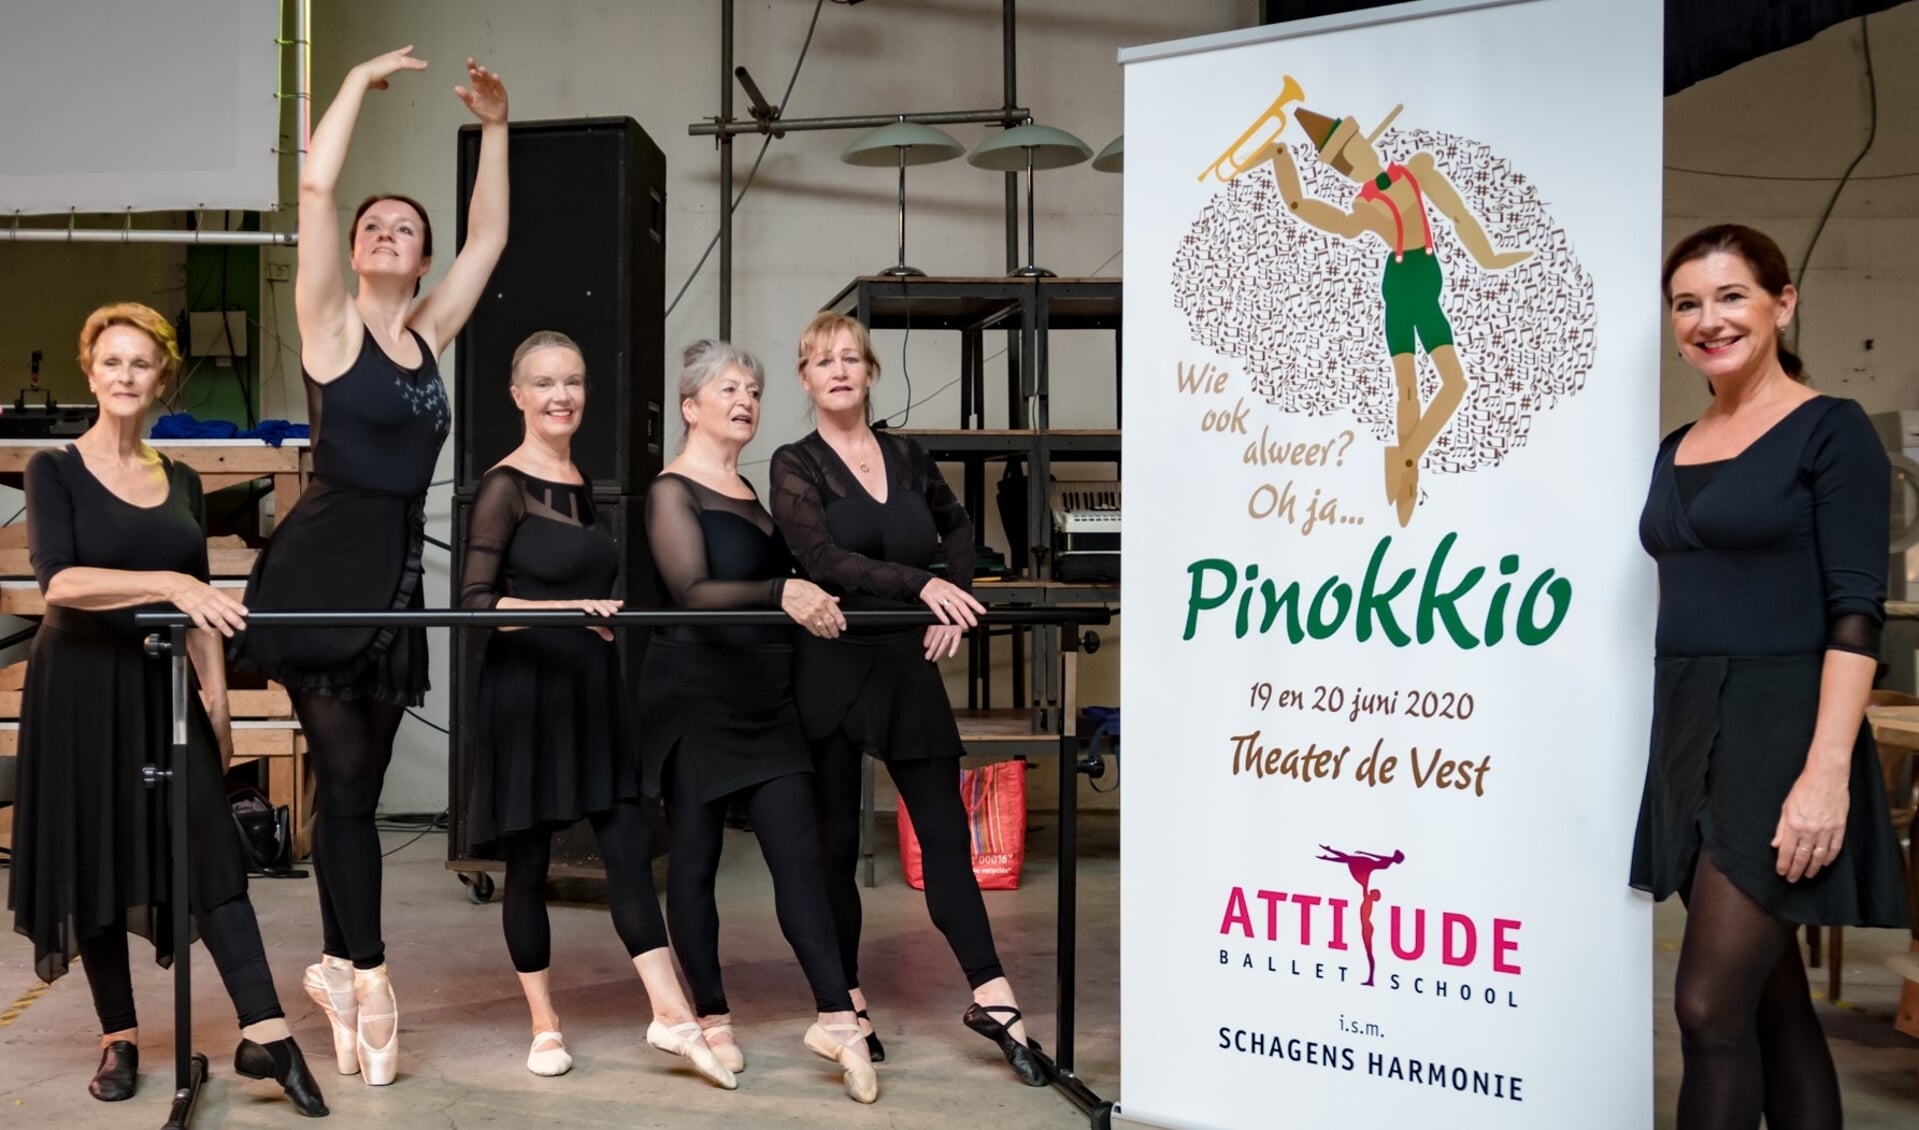 Balletschool Attitude en Schager Harmonie al bezig met nieuwe voorstelling over Pinokkio.